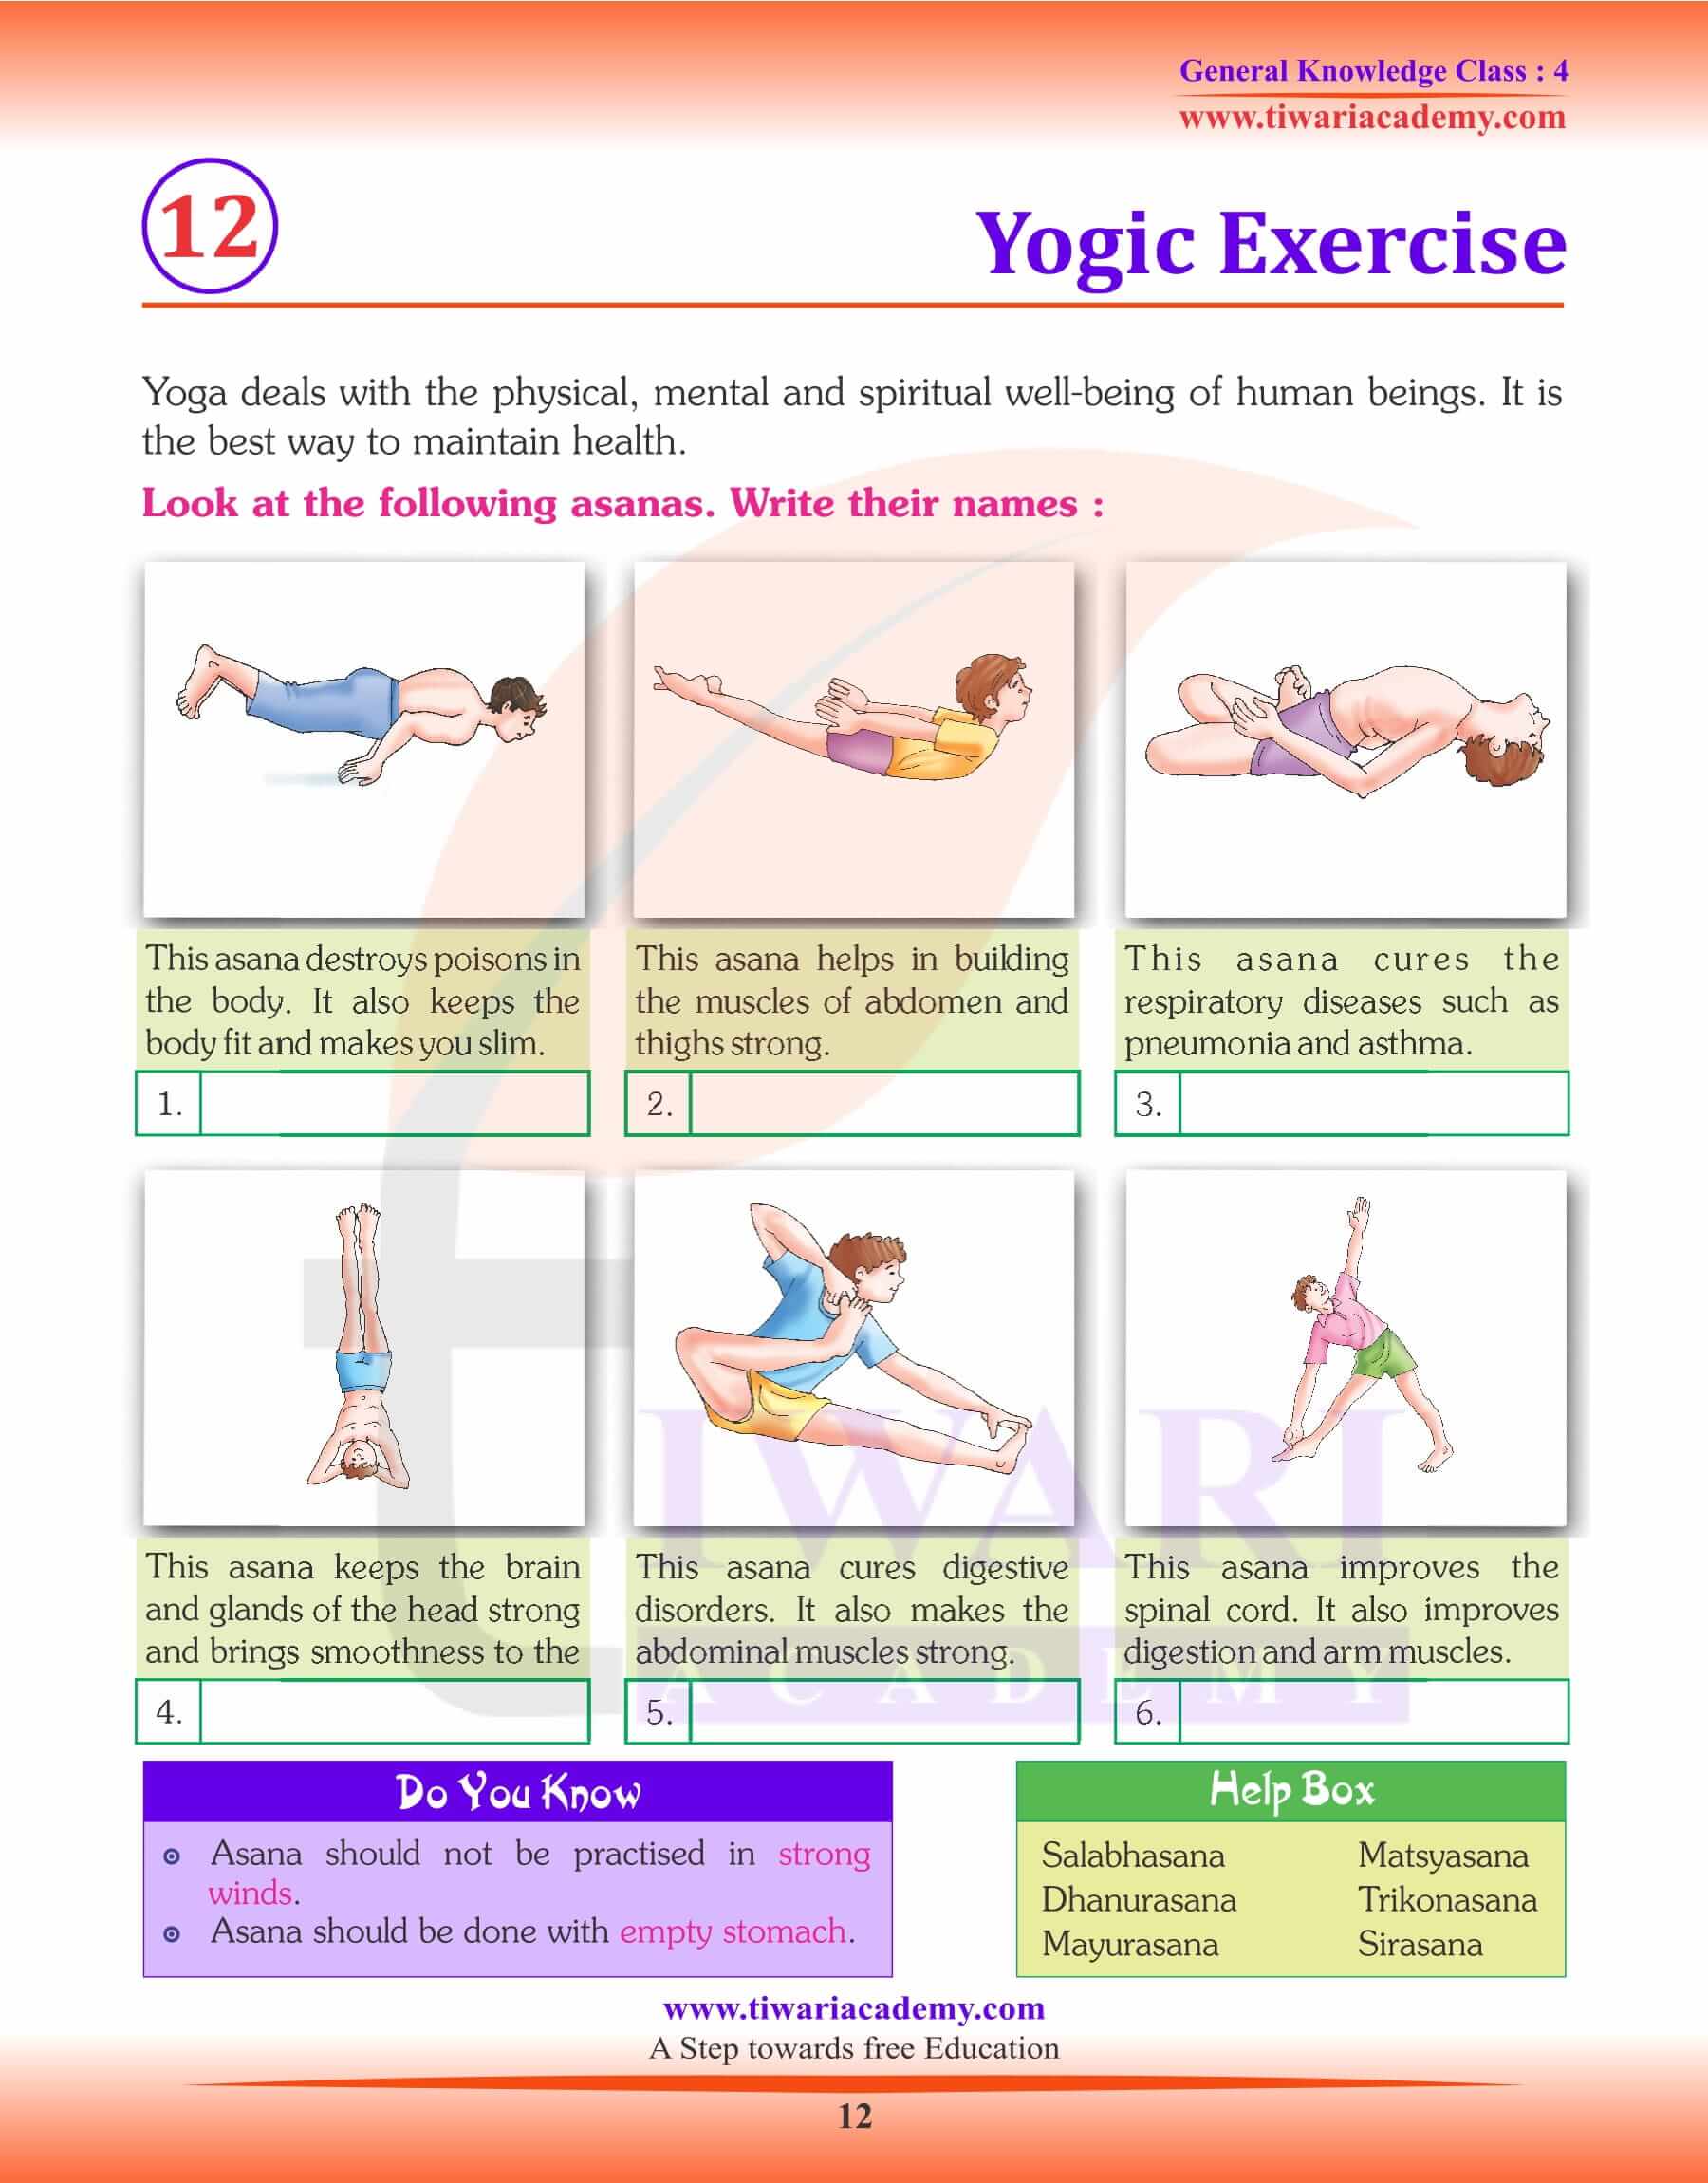 Yogic Exercise